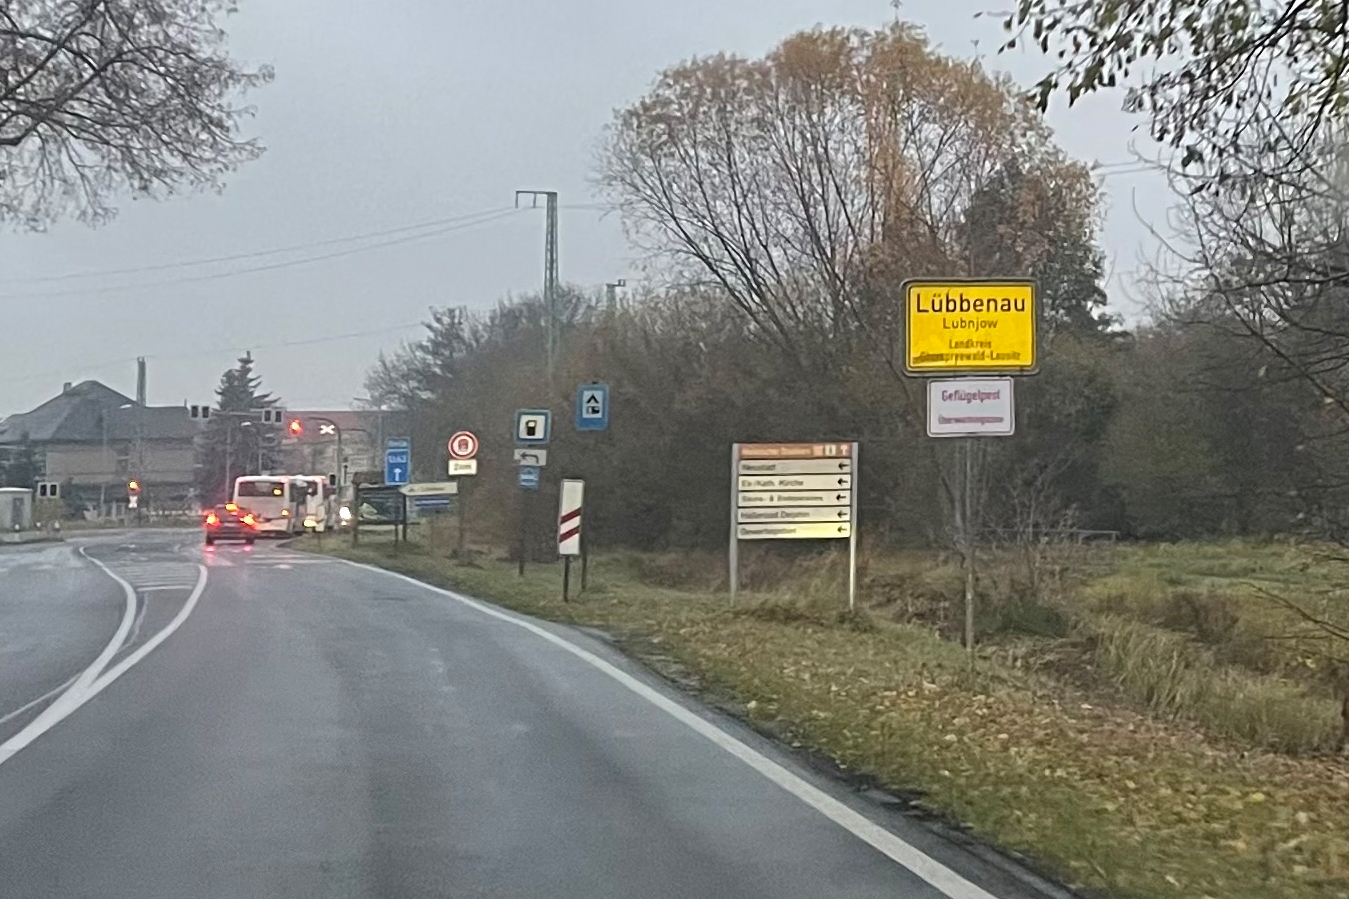 Bild Ortseingangsschild Lübbenau/Spreewald mit der zusätzlichen Beschilderung "Geflügelpest Überwachungszone"